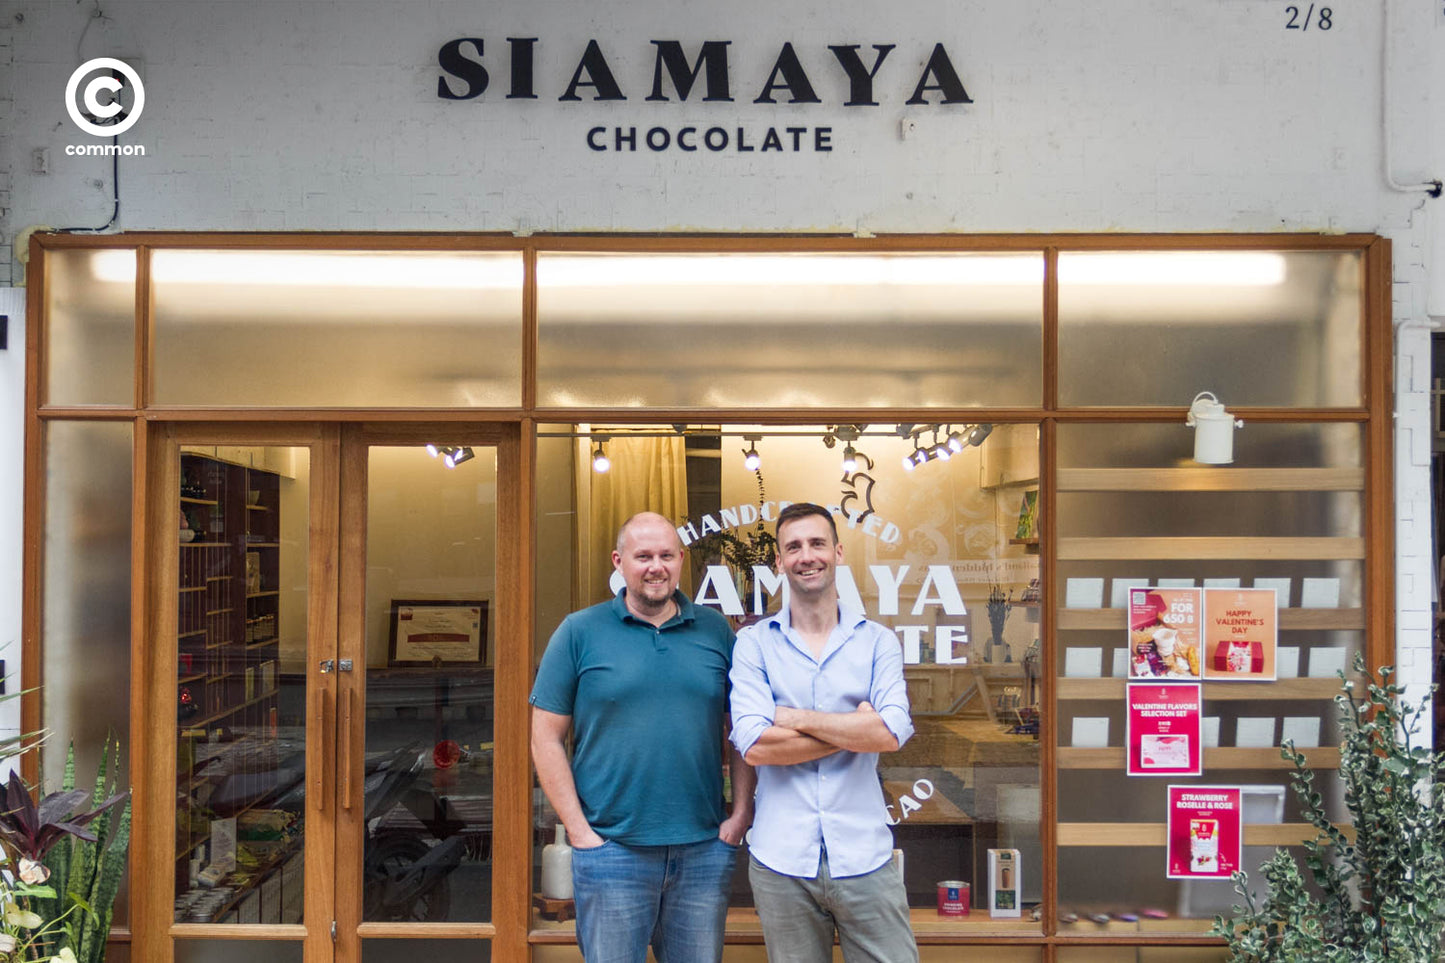 Siamaya Chocolate